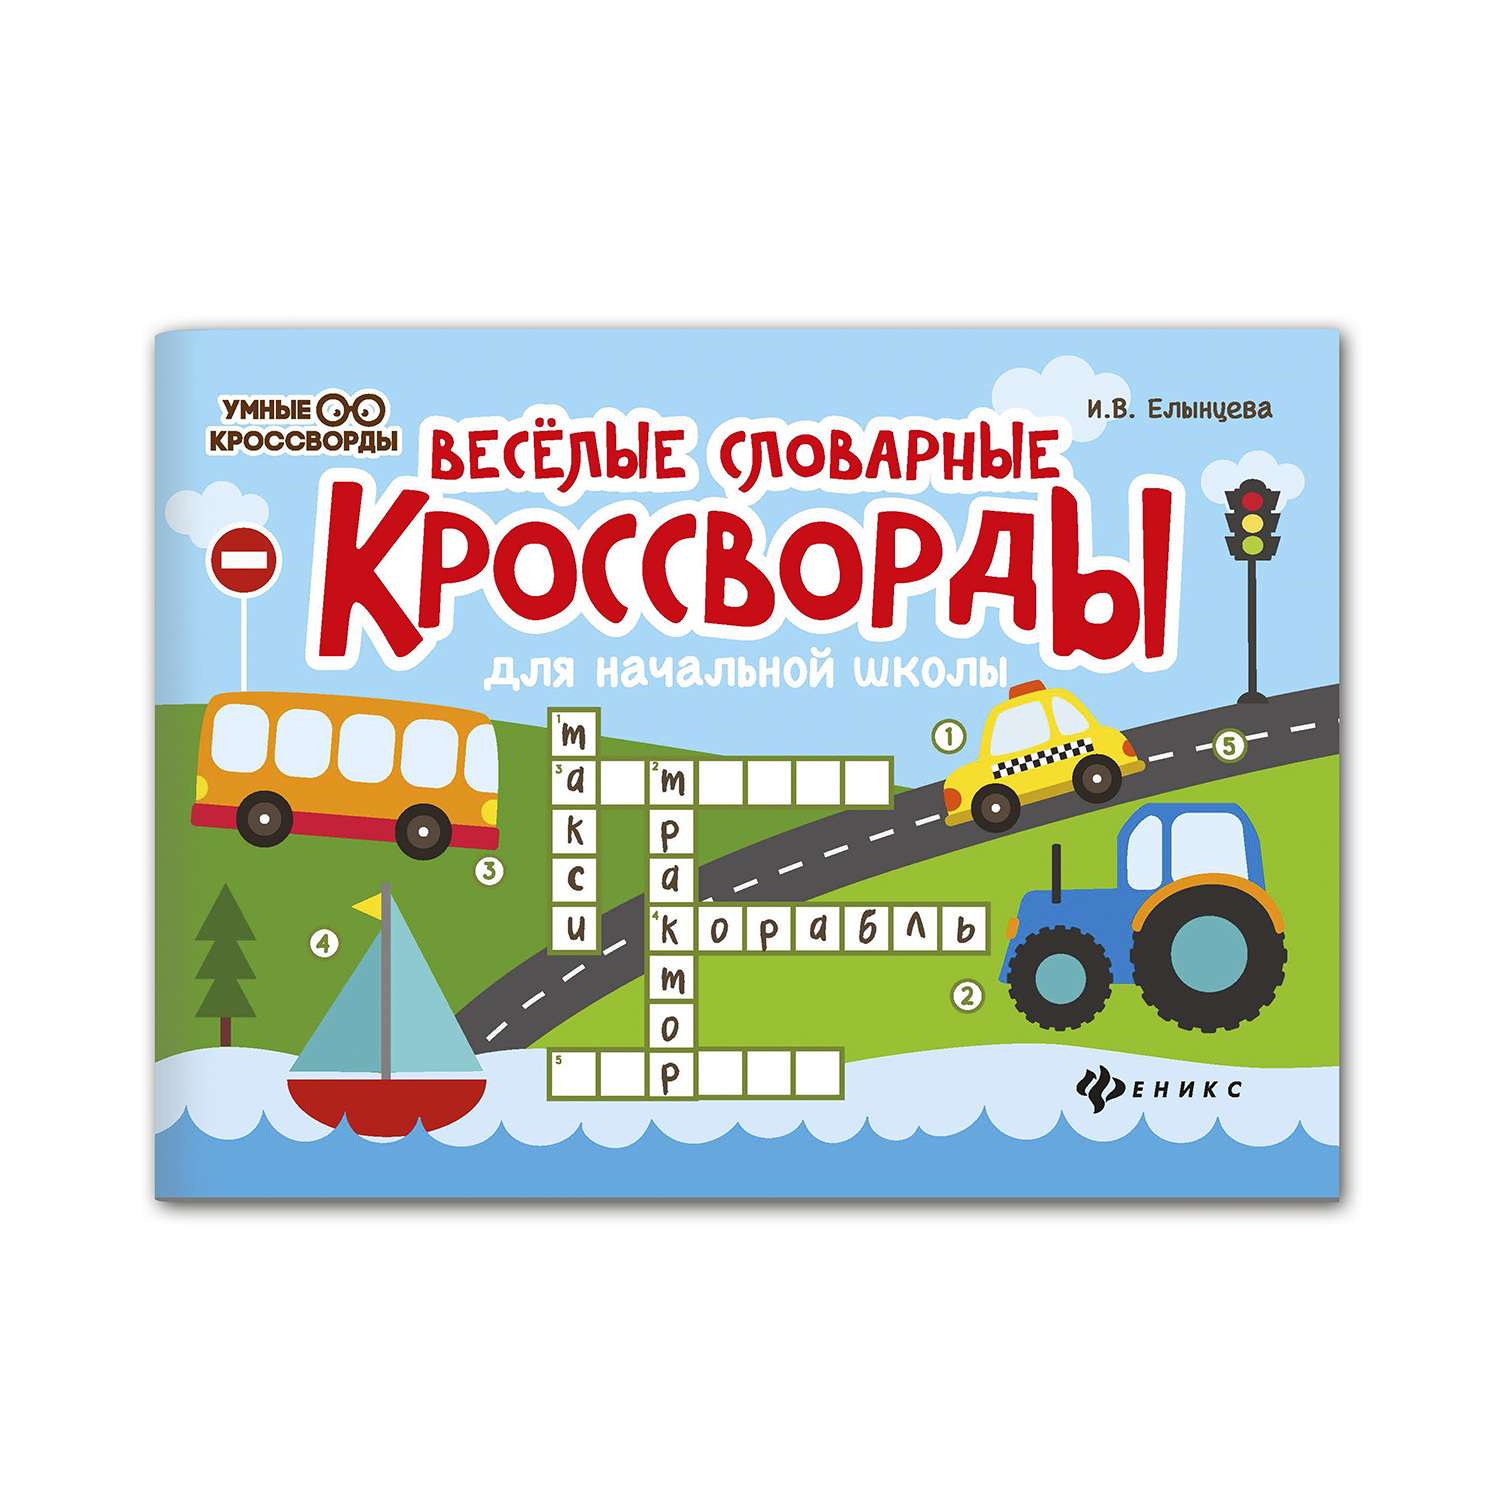 Фотокроссворд - ответы на игру в Одноклассниках